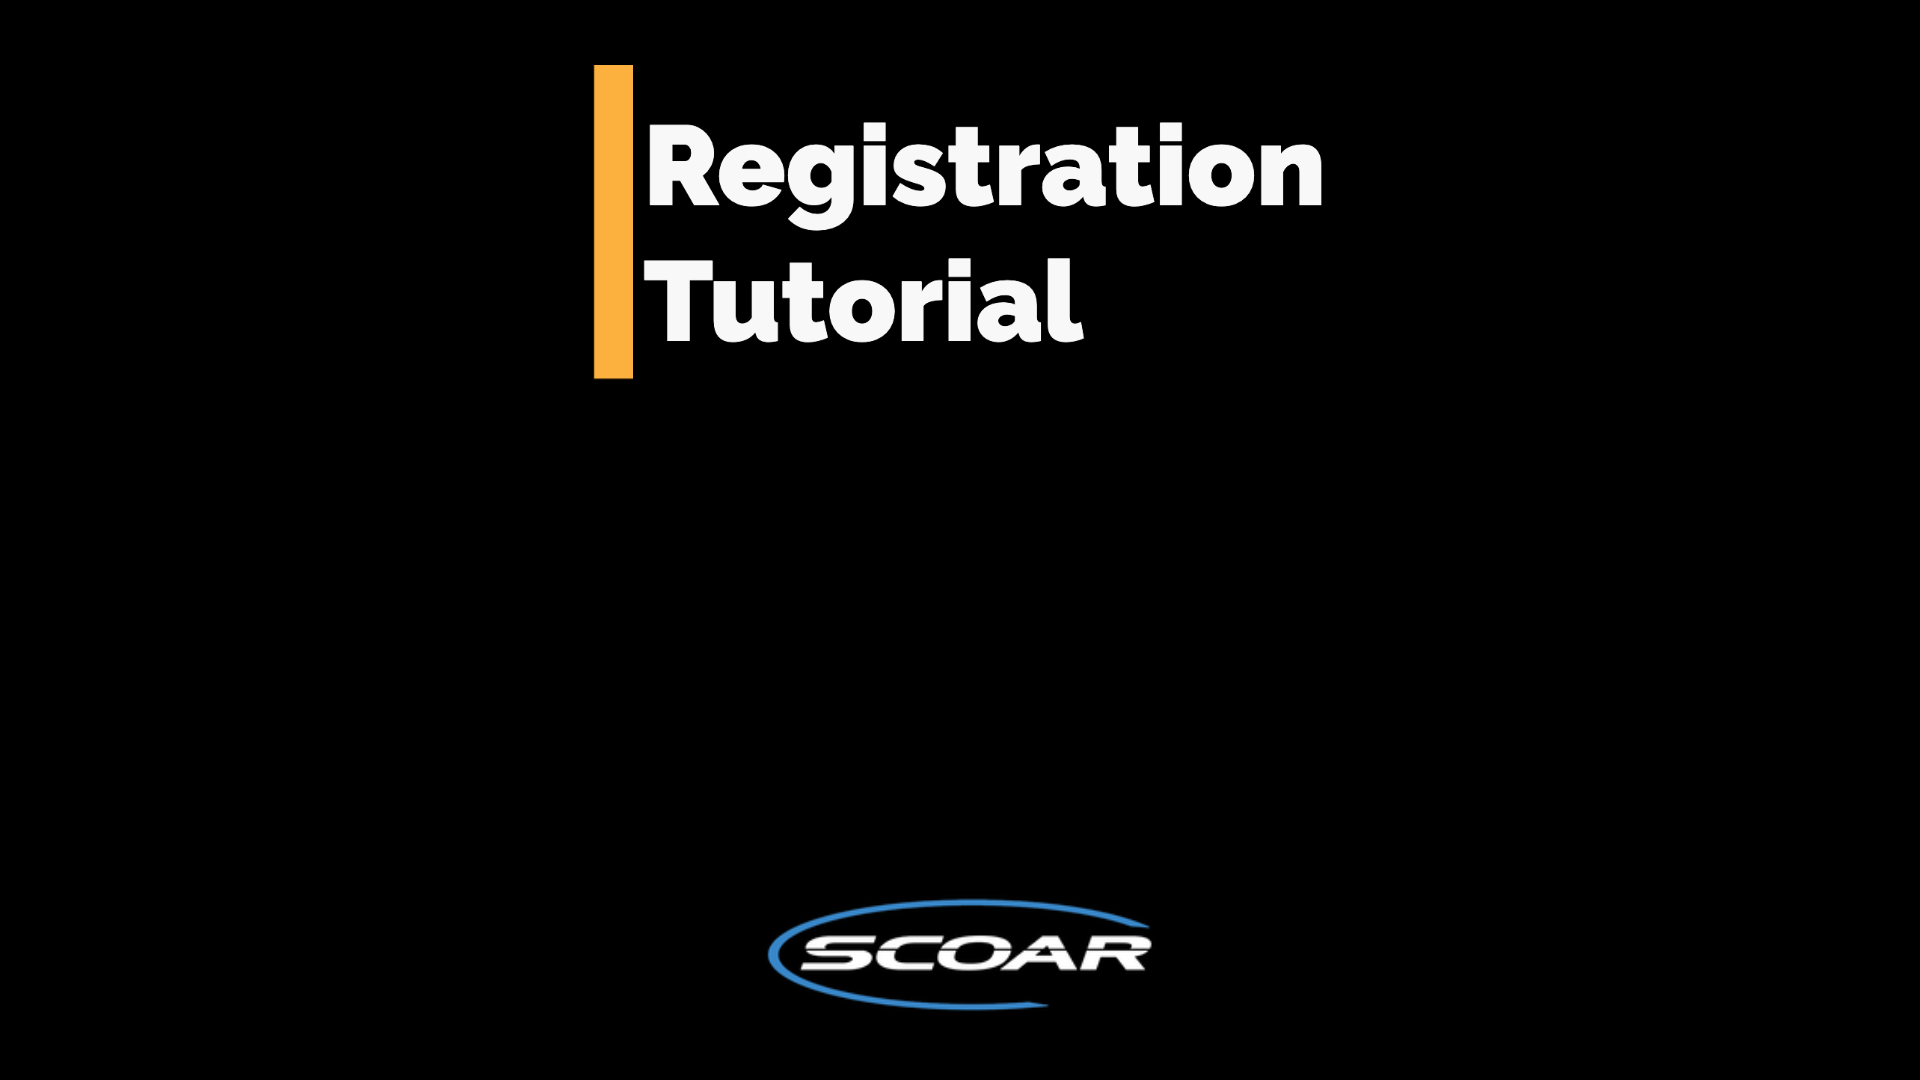 scoar registration tutorial